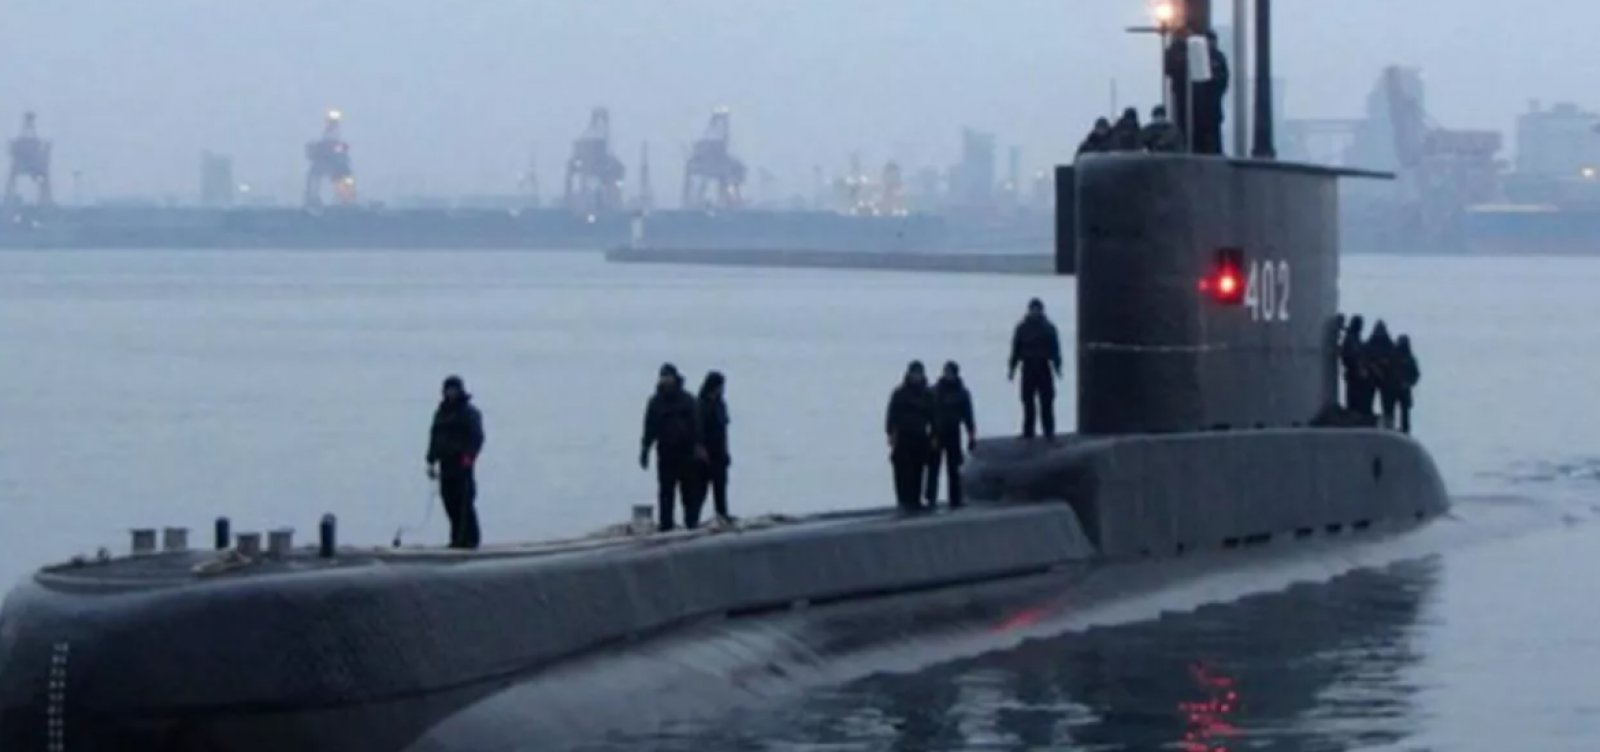 [Submarino com 53 tripulantes desaparece na Indonésia ]